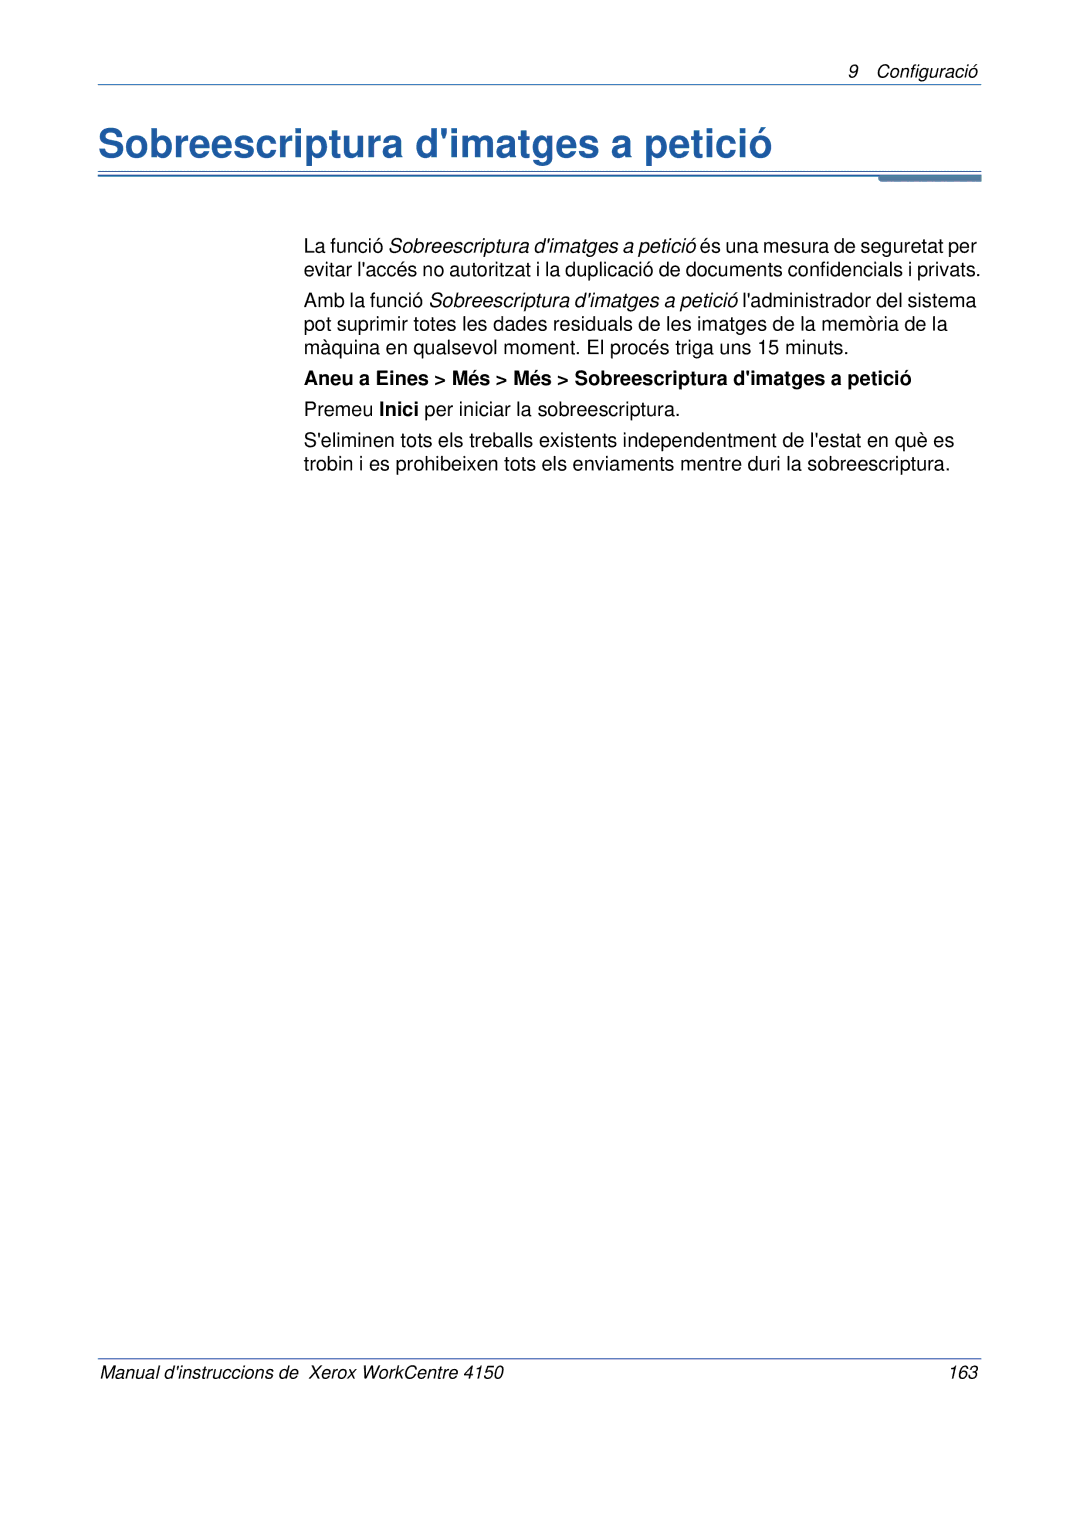 Xerox 5.0 24.03.06 manual Aneu a Eines Més Més Sobreescriptura dimatges a petició 